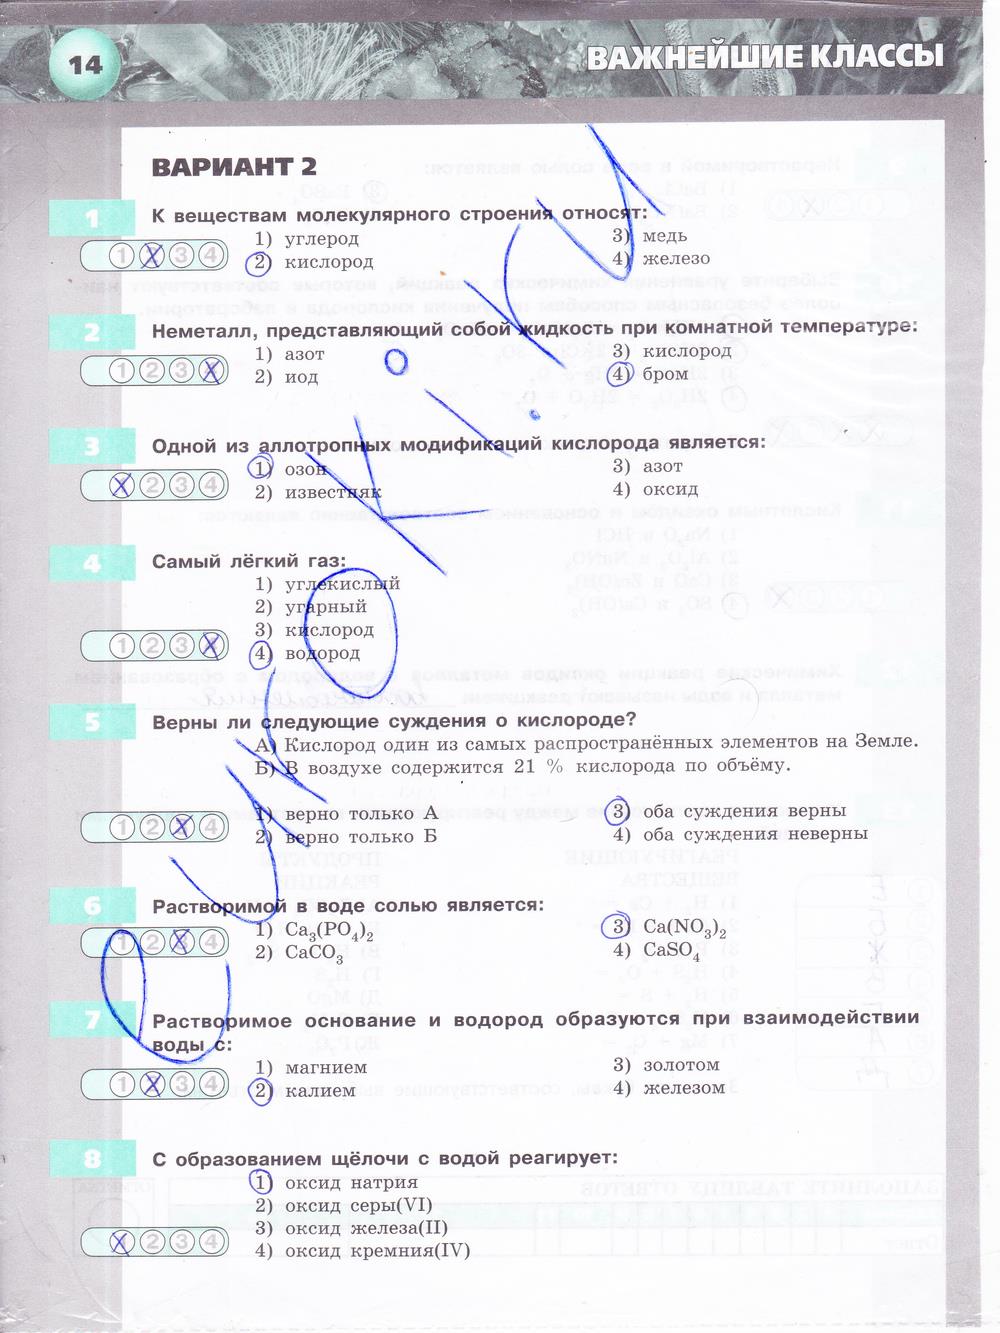 гдз 8 класс тетрадь-экзаменатор страница 14 химия Бобылева, Бирюлина